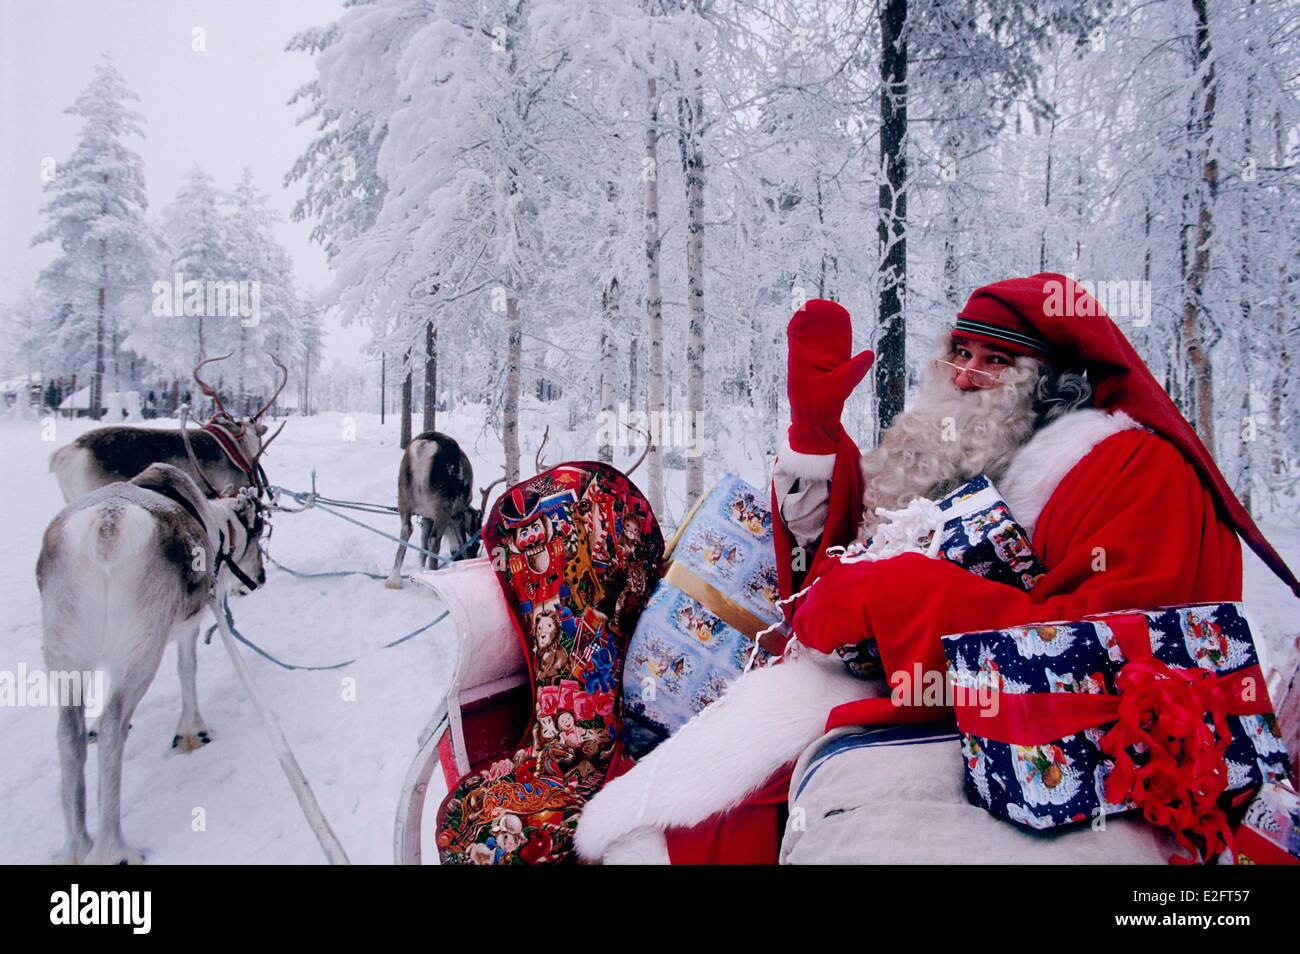 Finlande Laponie Rovaniemi Santa Claus Village' sur son traîneau du Père Noël, laissant sur son voyage de distribution Banque D'Images